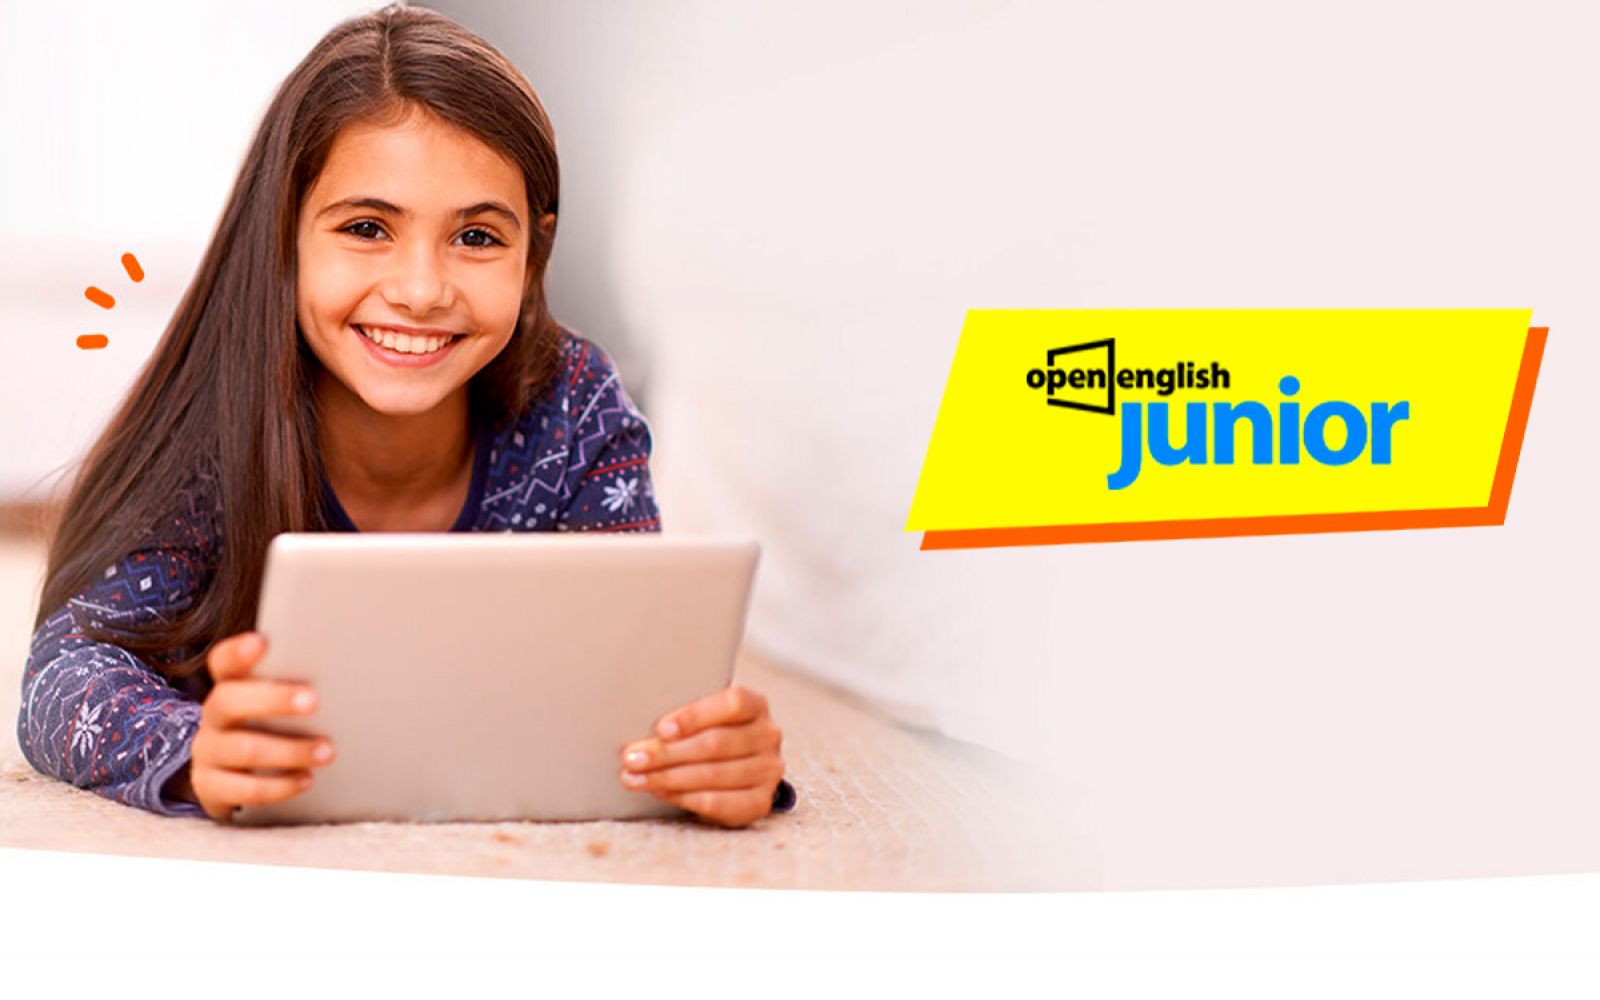 Campanha publicitária de Open English apresenta plataforma Junior